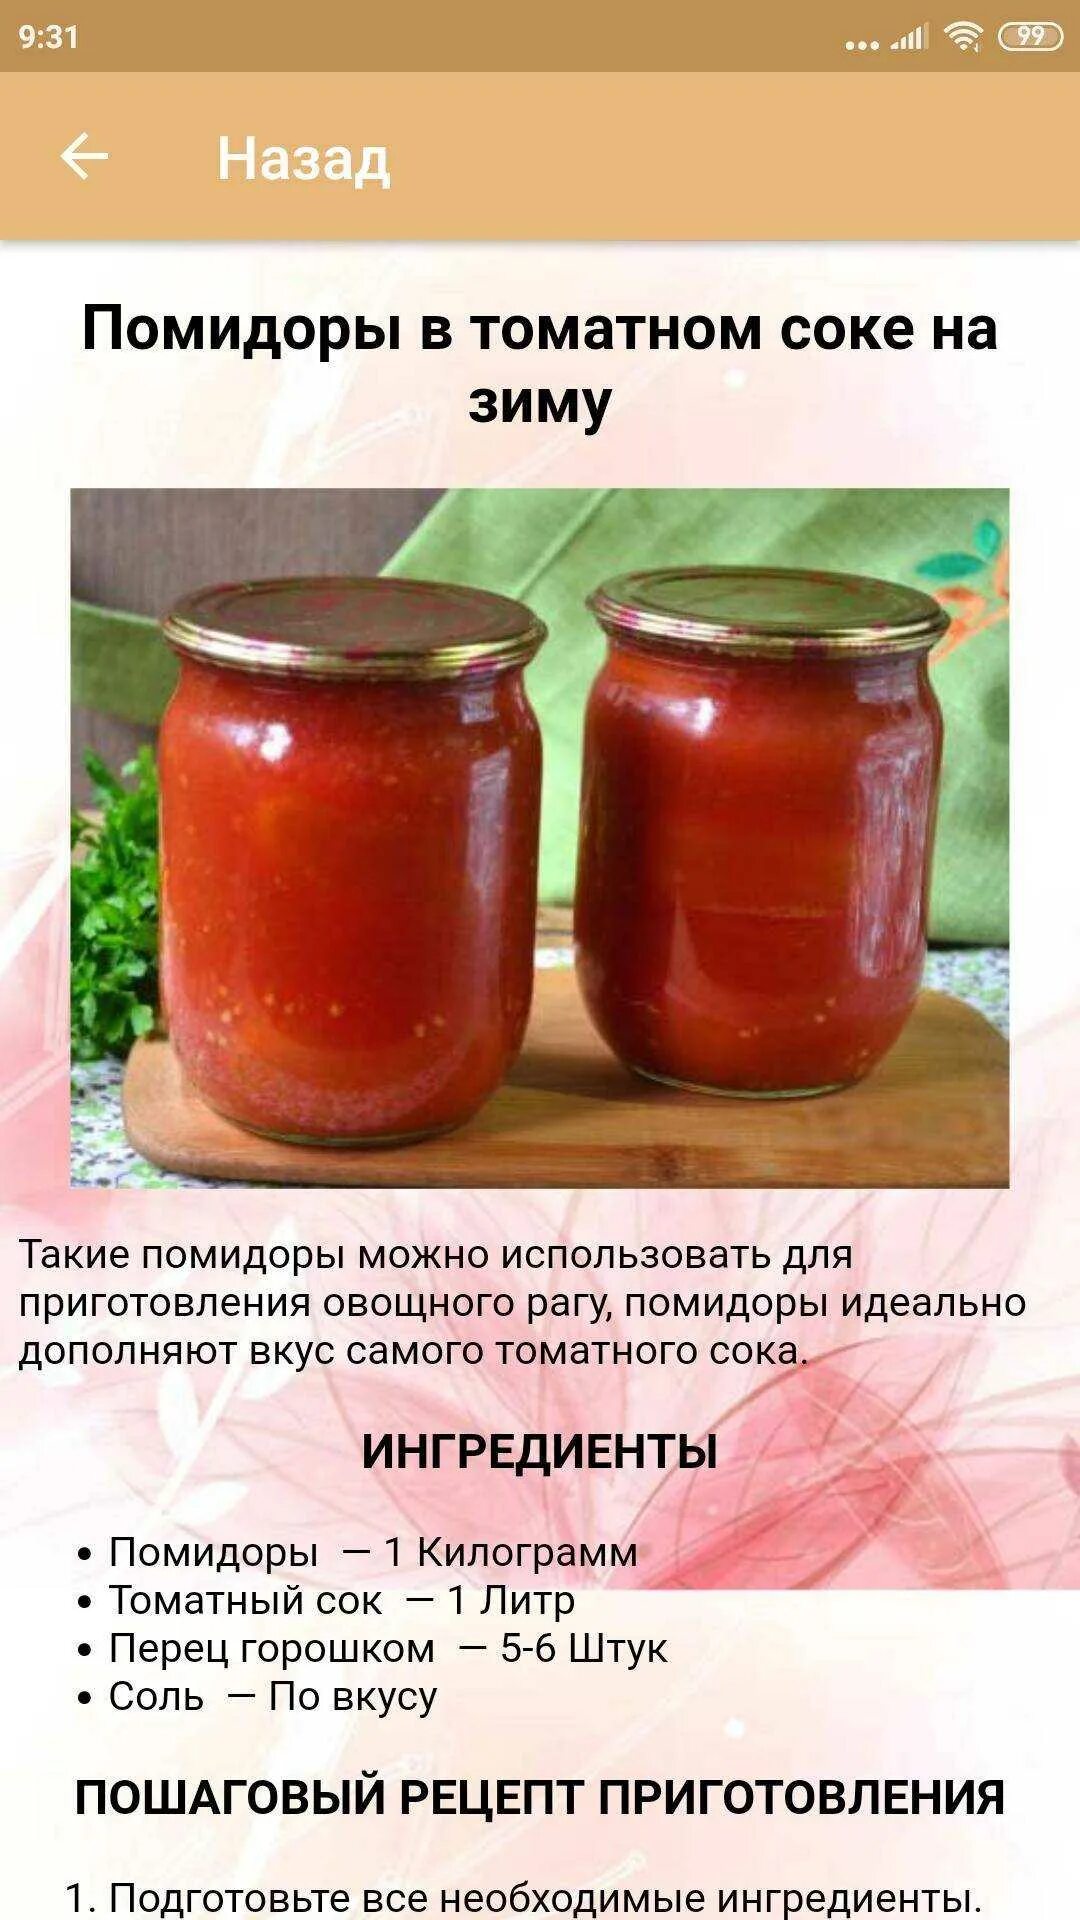 Сок томатный на 1 литр соли. Рецепт консервирования. Простые рецепты консервирования. Консервирование томатов рецепты. Помидоры консервированные в томатном соке.